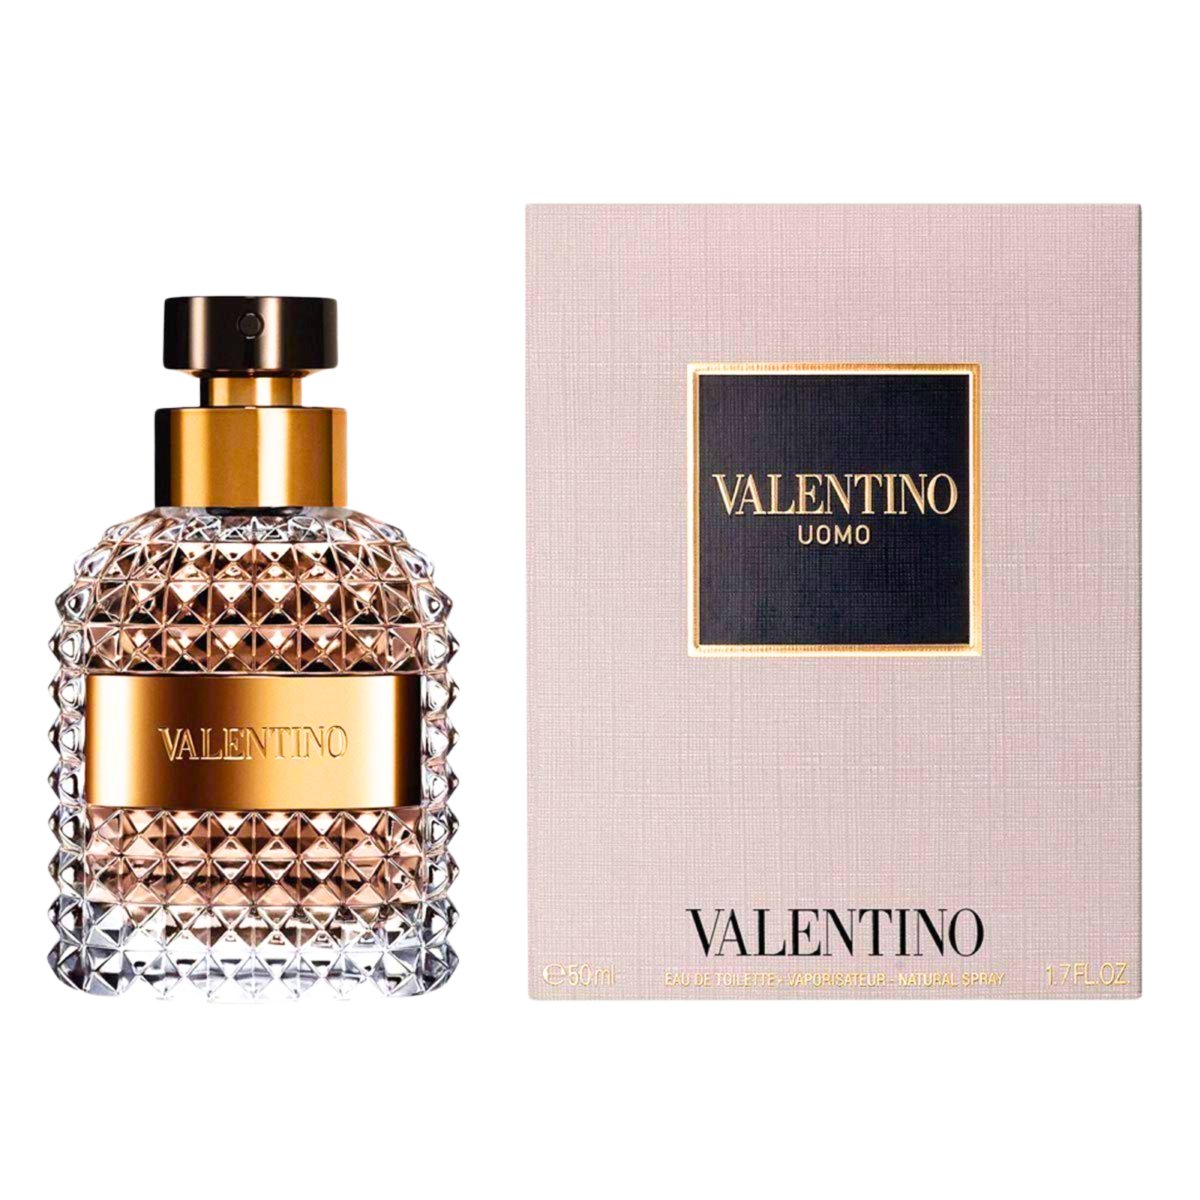 Valentino Men's Uomo EDT Spray 1.7 oz Fragrances - Perfume Headquarters - Valentino - 1.7 oz - Eau de Toilette - Fragrance - 3614272732230 - Fragrance